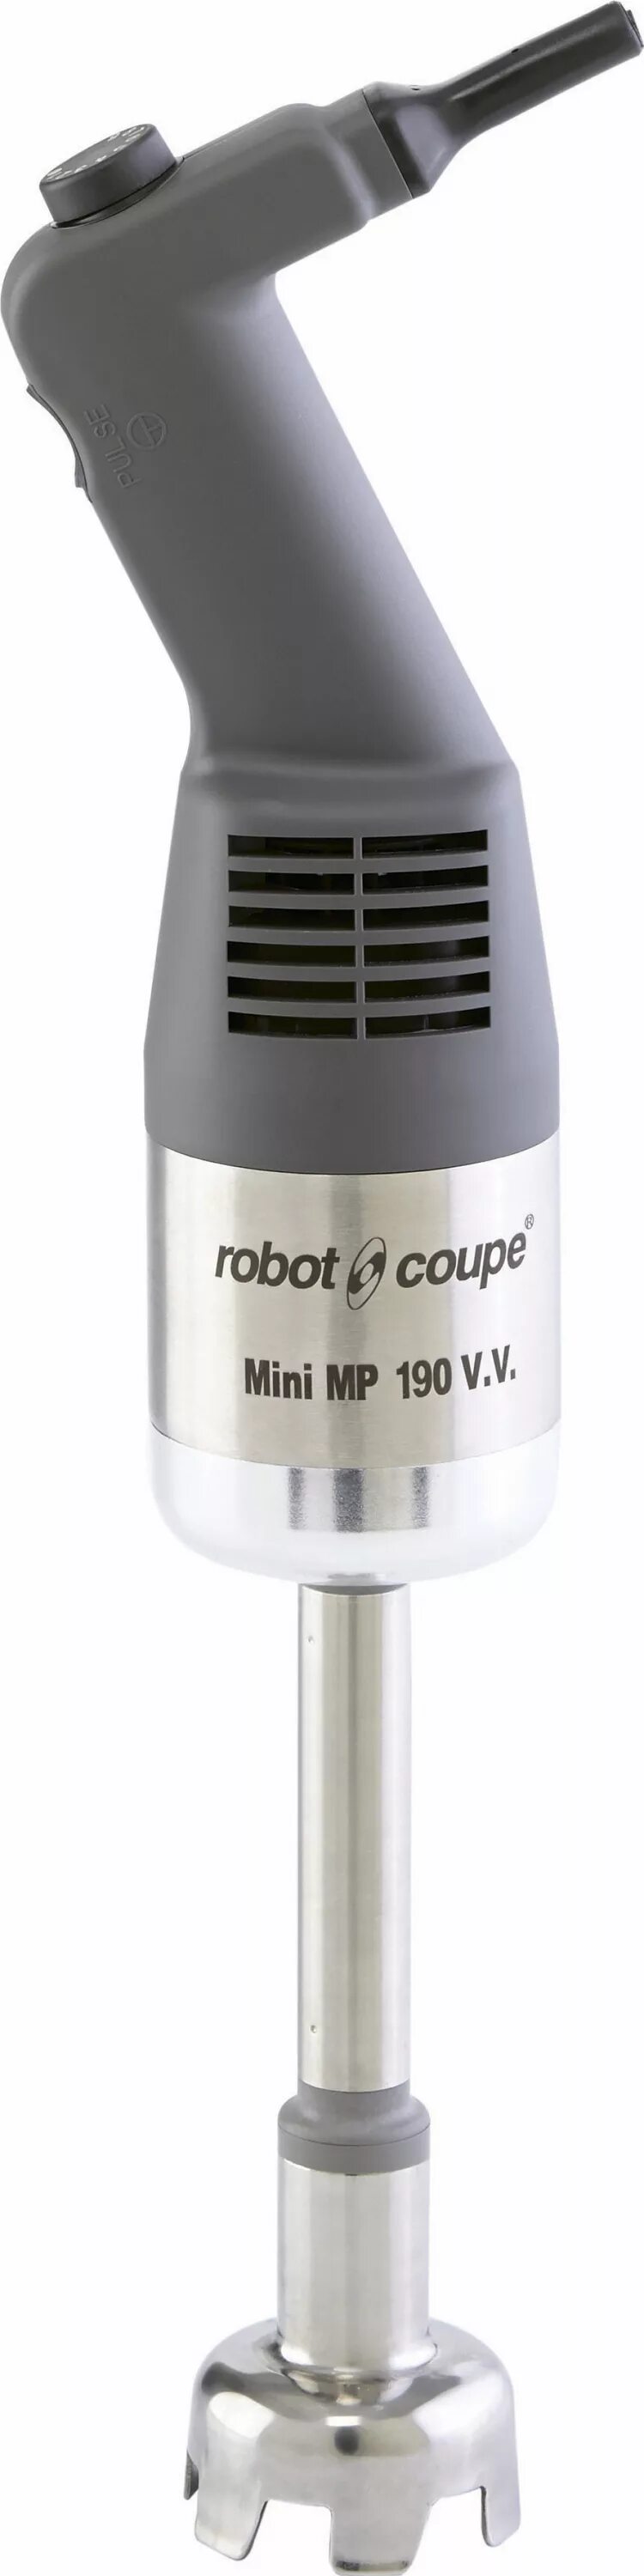 Миксер robot coupe mini mp. Robot-Coupe Mini MP 190 VV.A. Миксер ручной Robot Coupe CMP 300 Combi. Robot Coupe Mini MP 190 Combi. Миксер Robot Coupe Mini mp190 v.v..